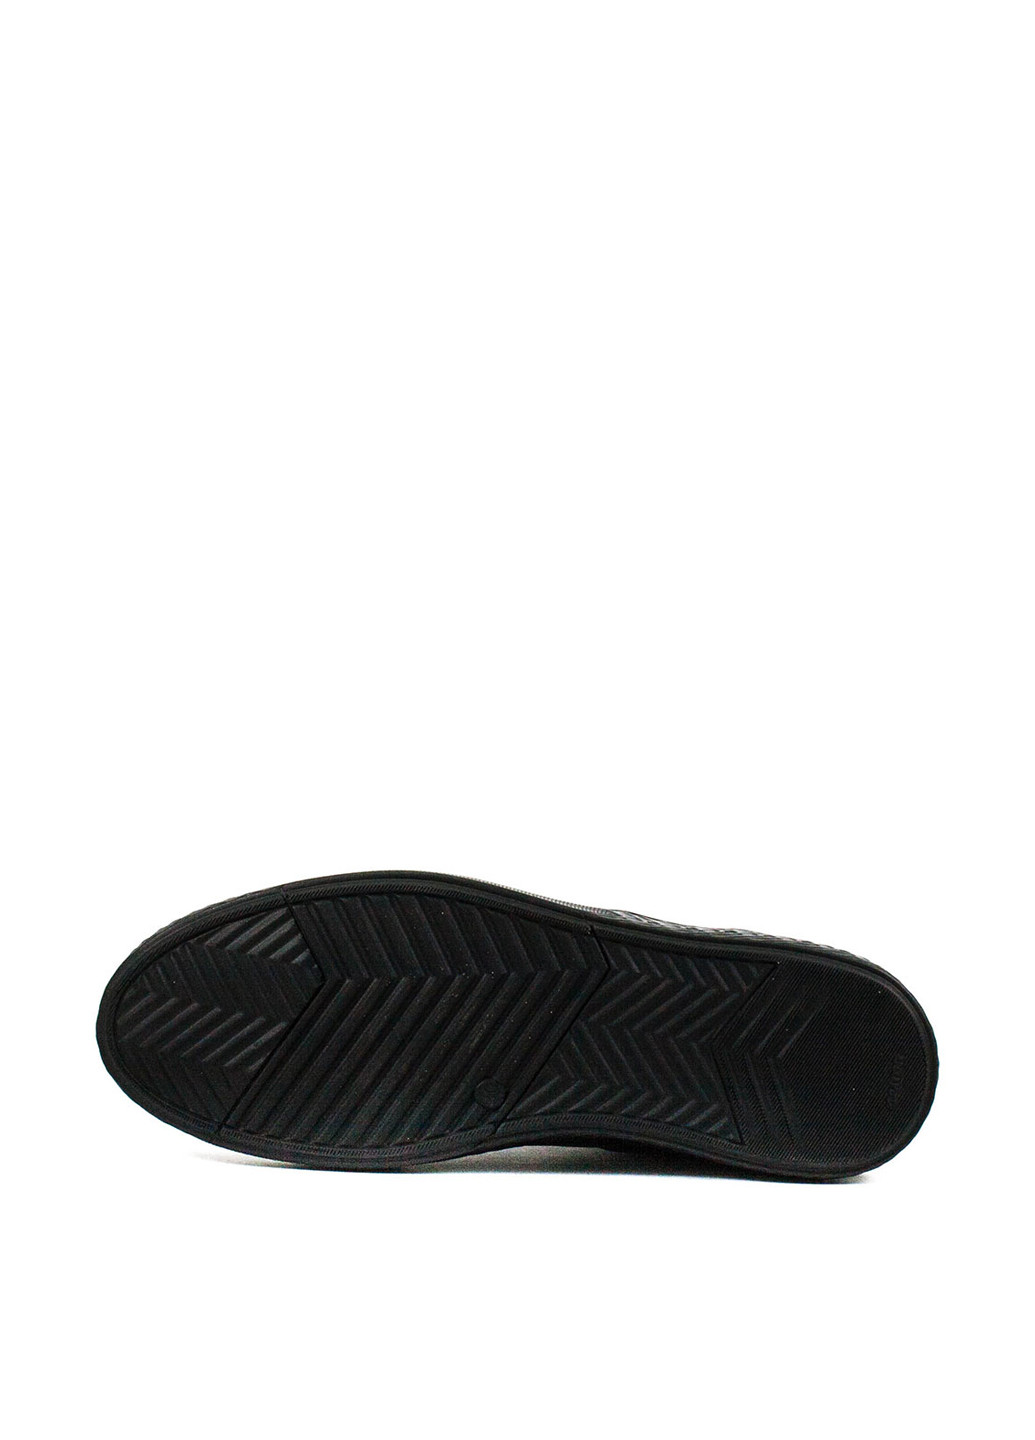 Черные спортивные туфли Mida на шнурках